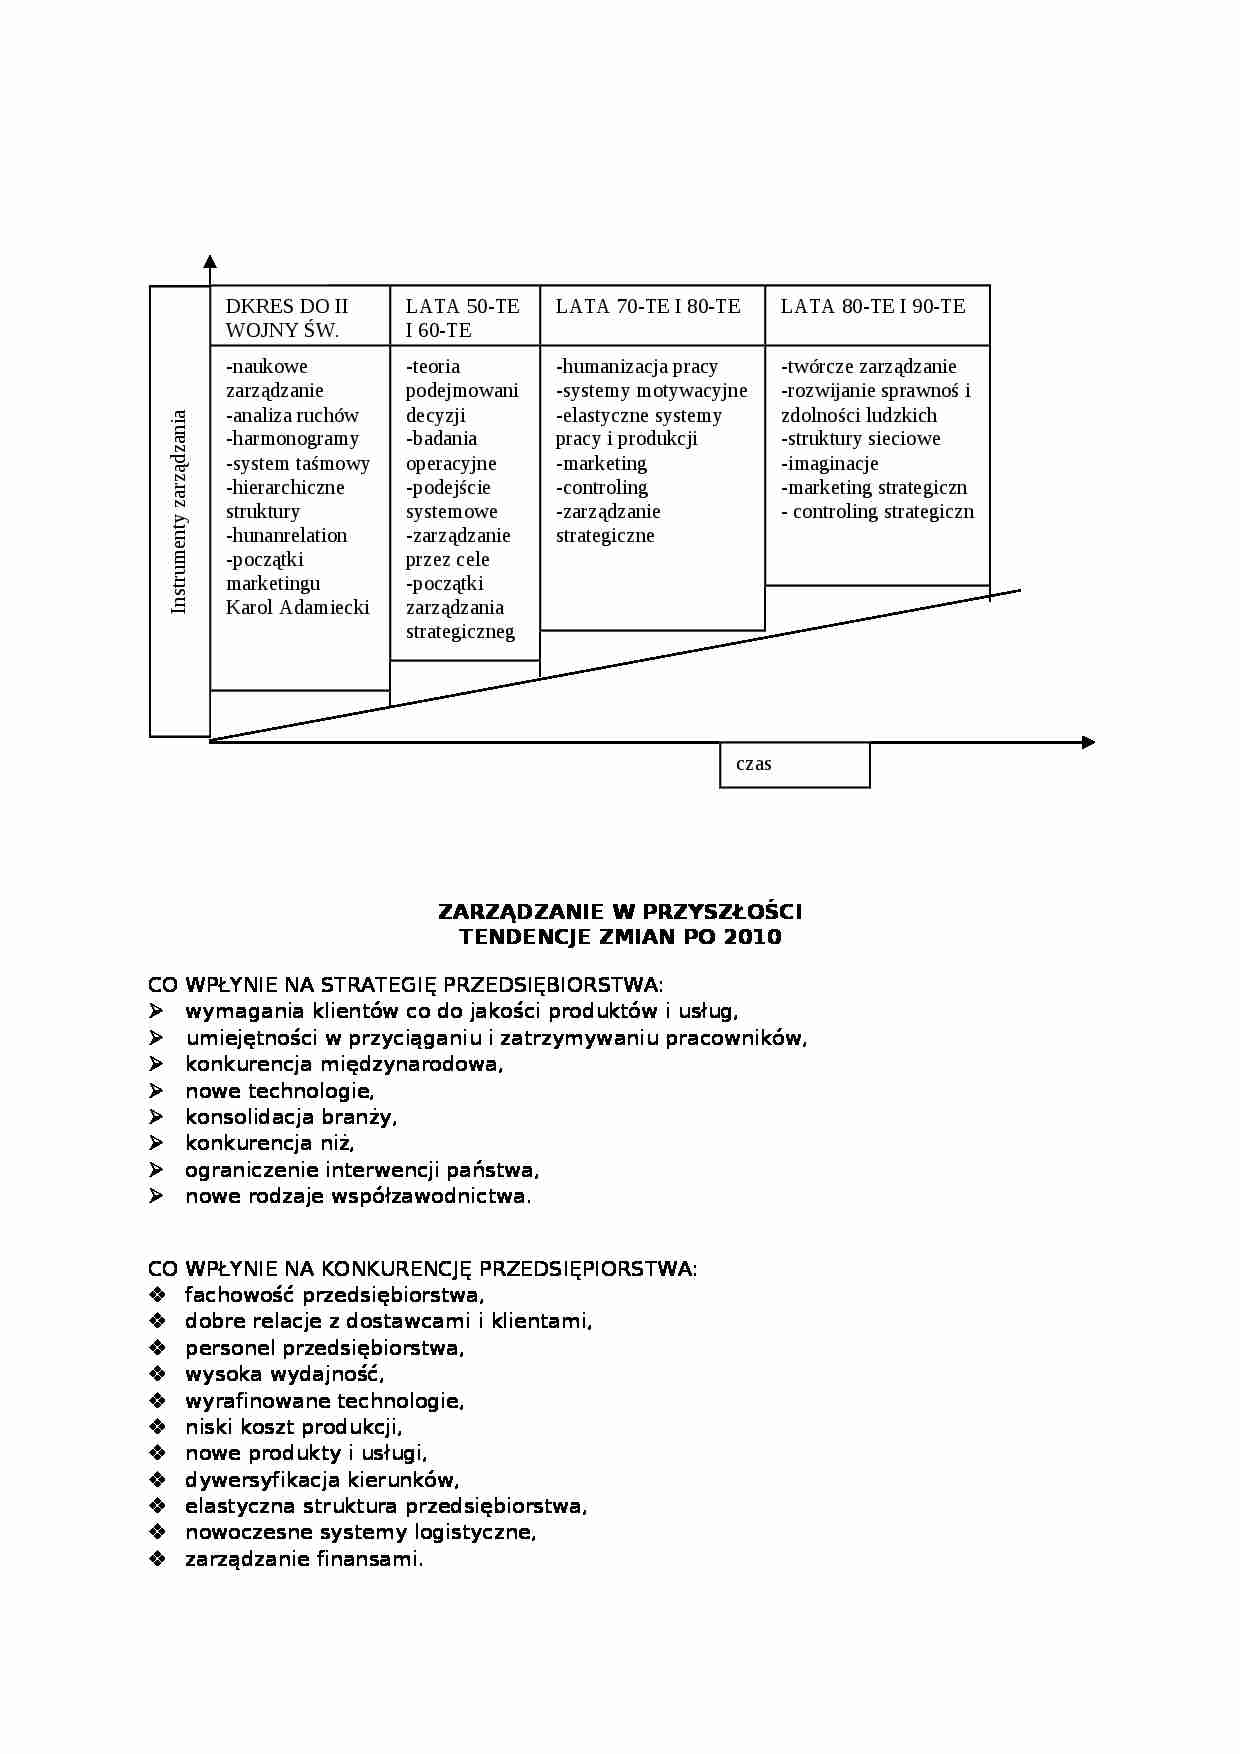 Zarządzanie strategiczne i strategia (11 stron).doc - strona 1